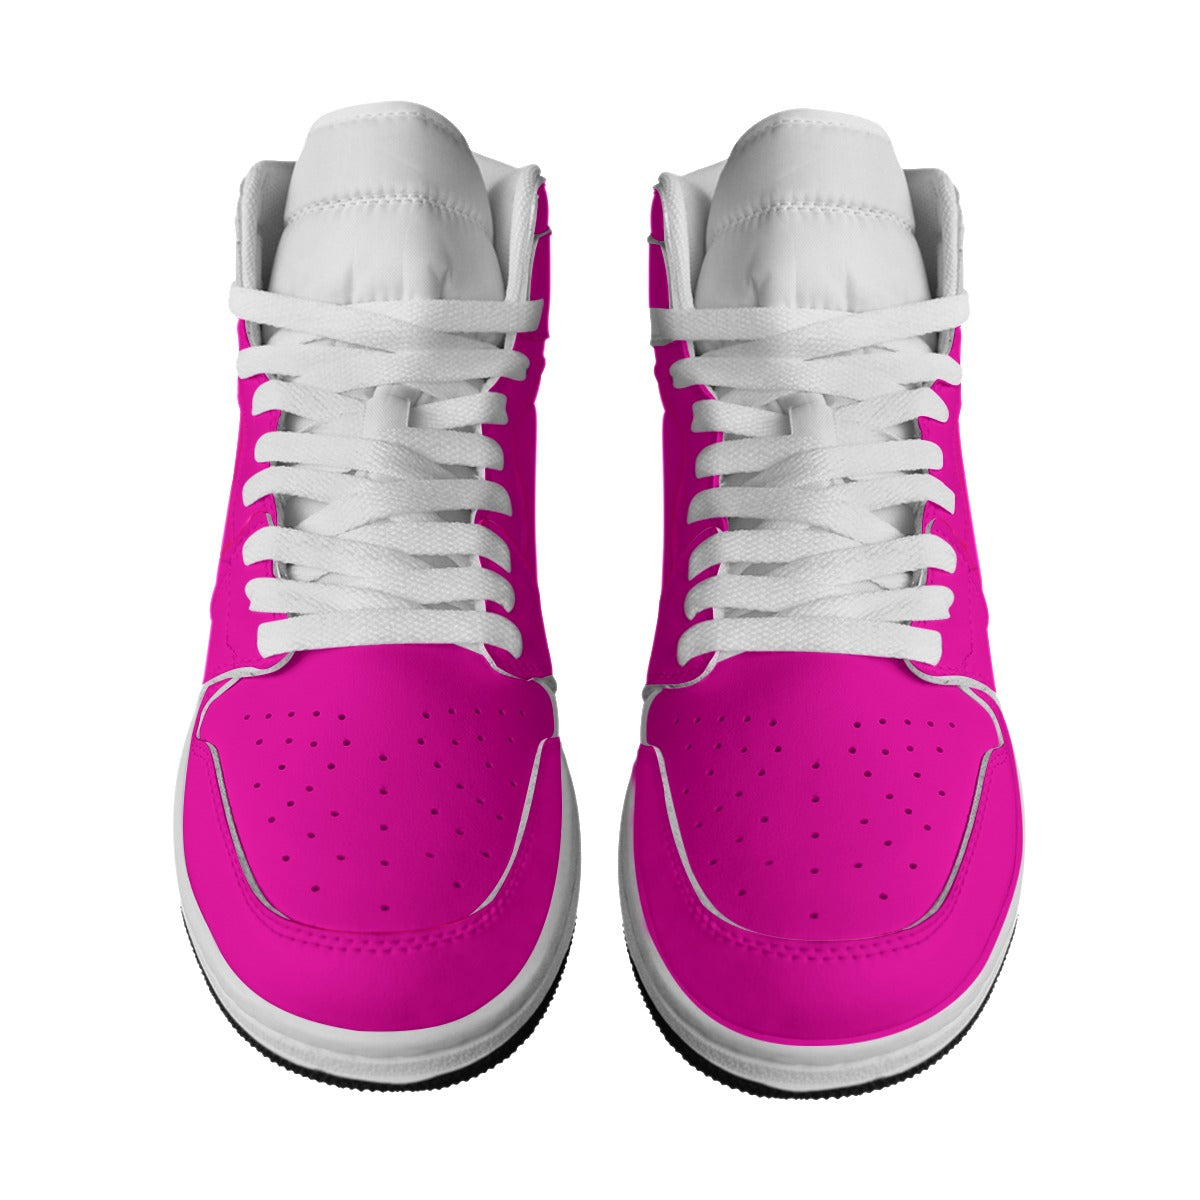 TGC FASHION Hot Pink Shoes